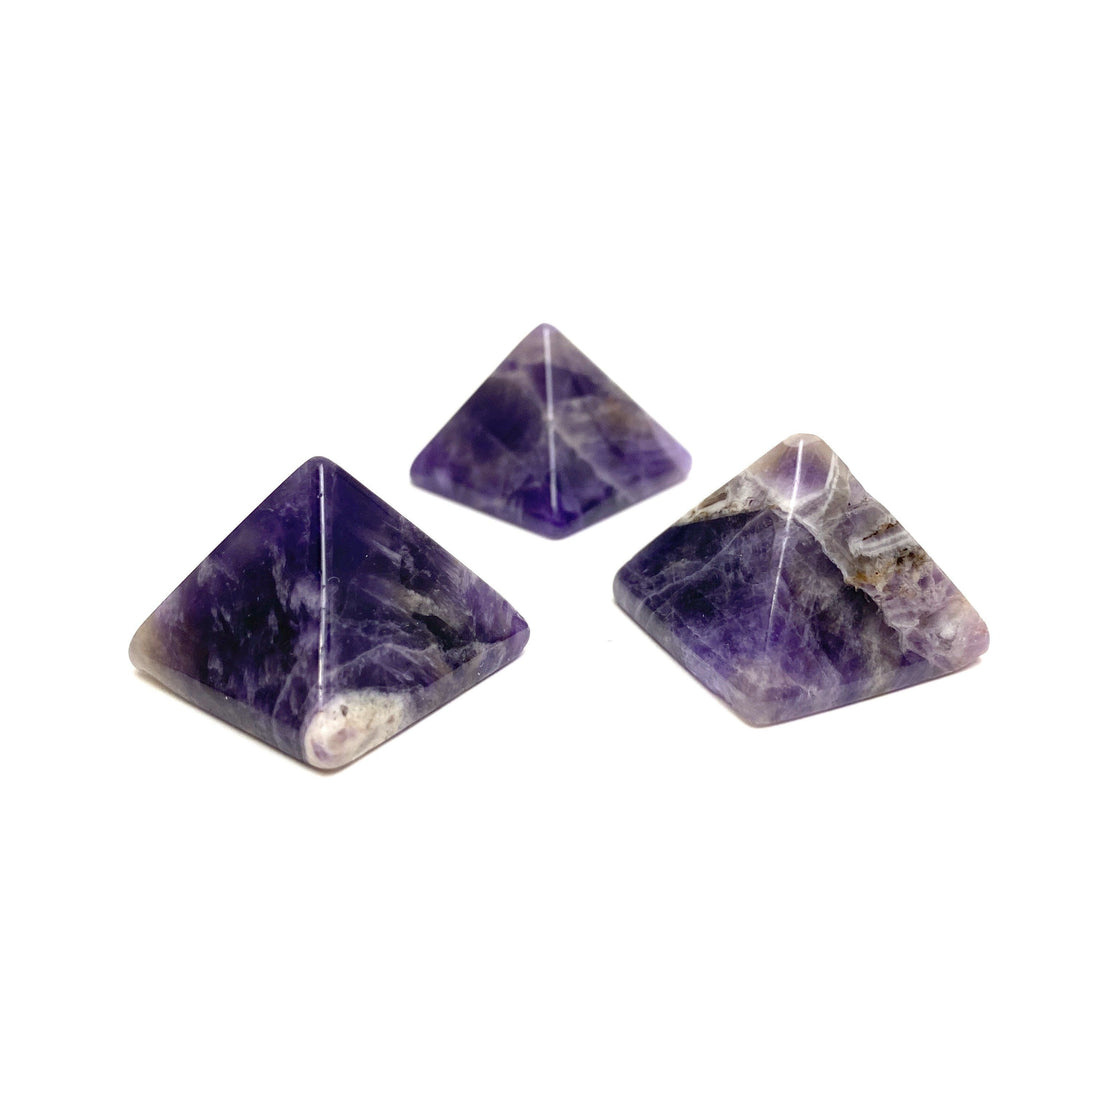 Amethyst Pyramid Amethyst Crystals A. $8.00 